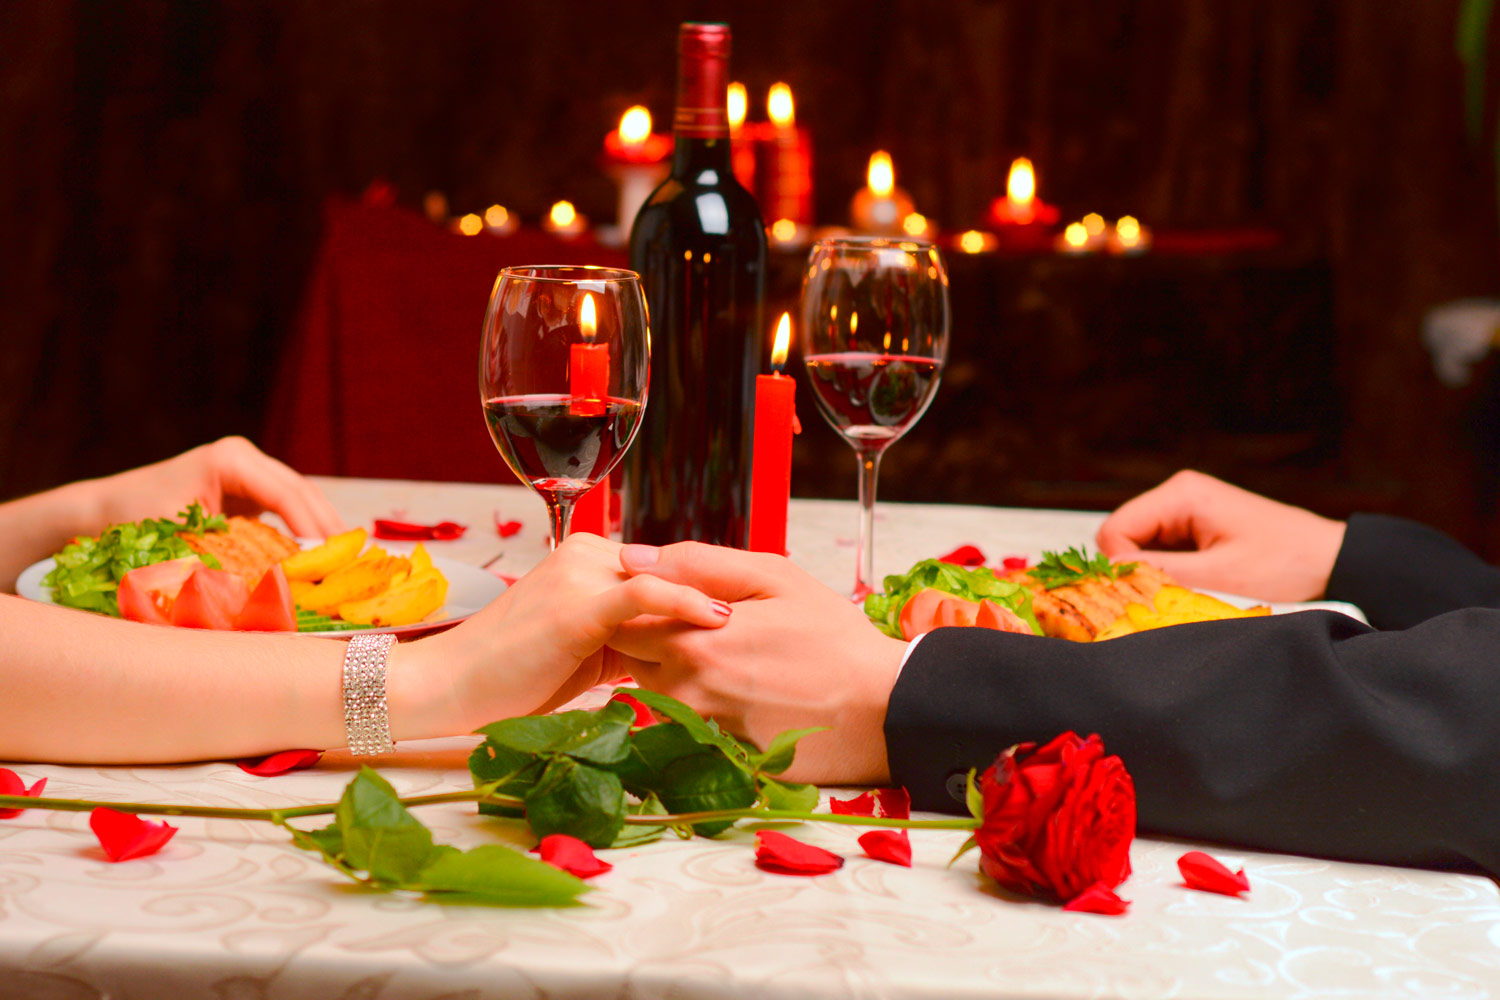 Regali per San Valentino: Idee Regalo Romantiche per Lui e per Lei - Irpot